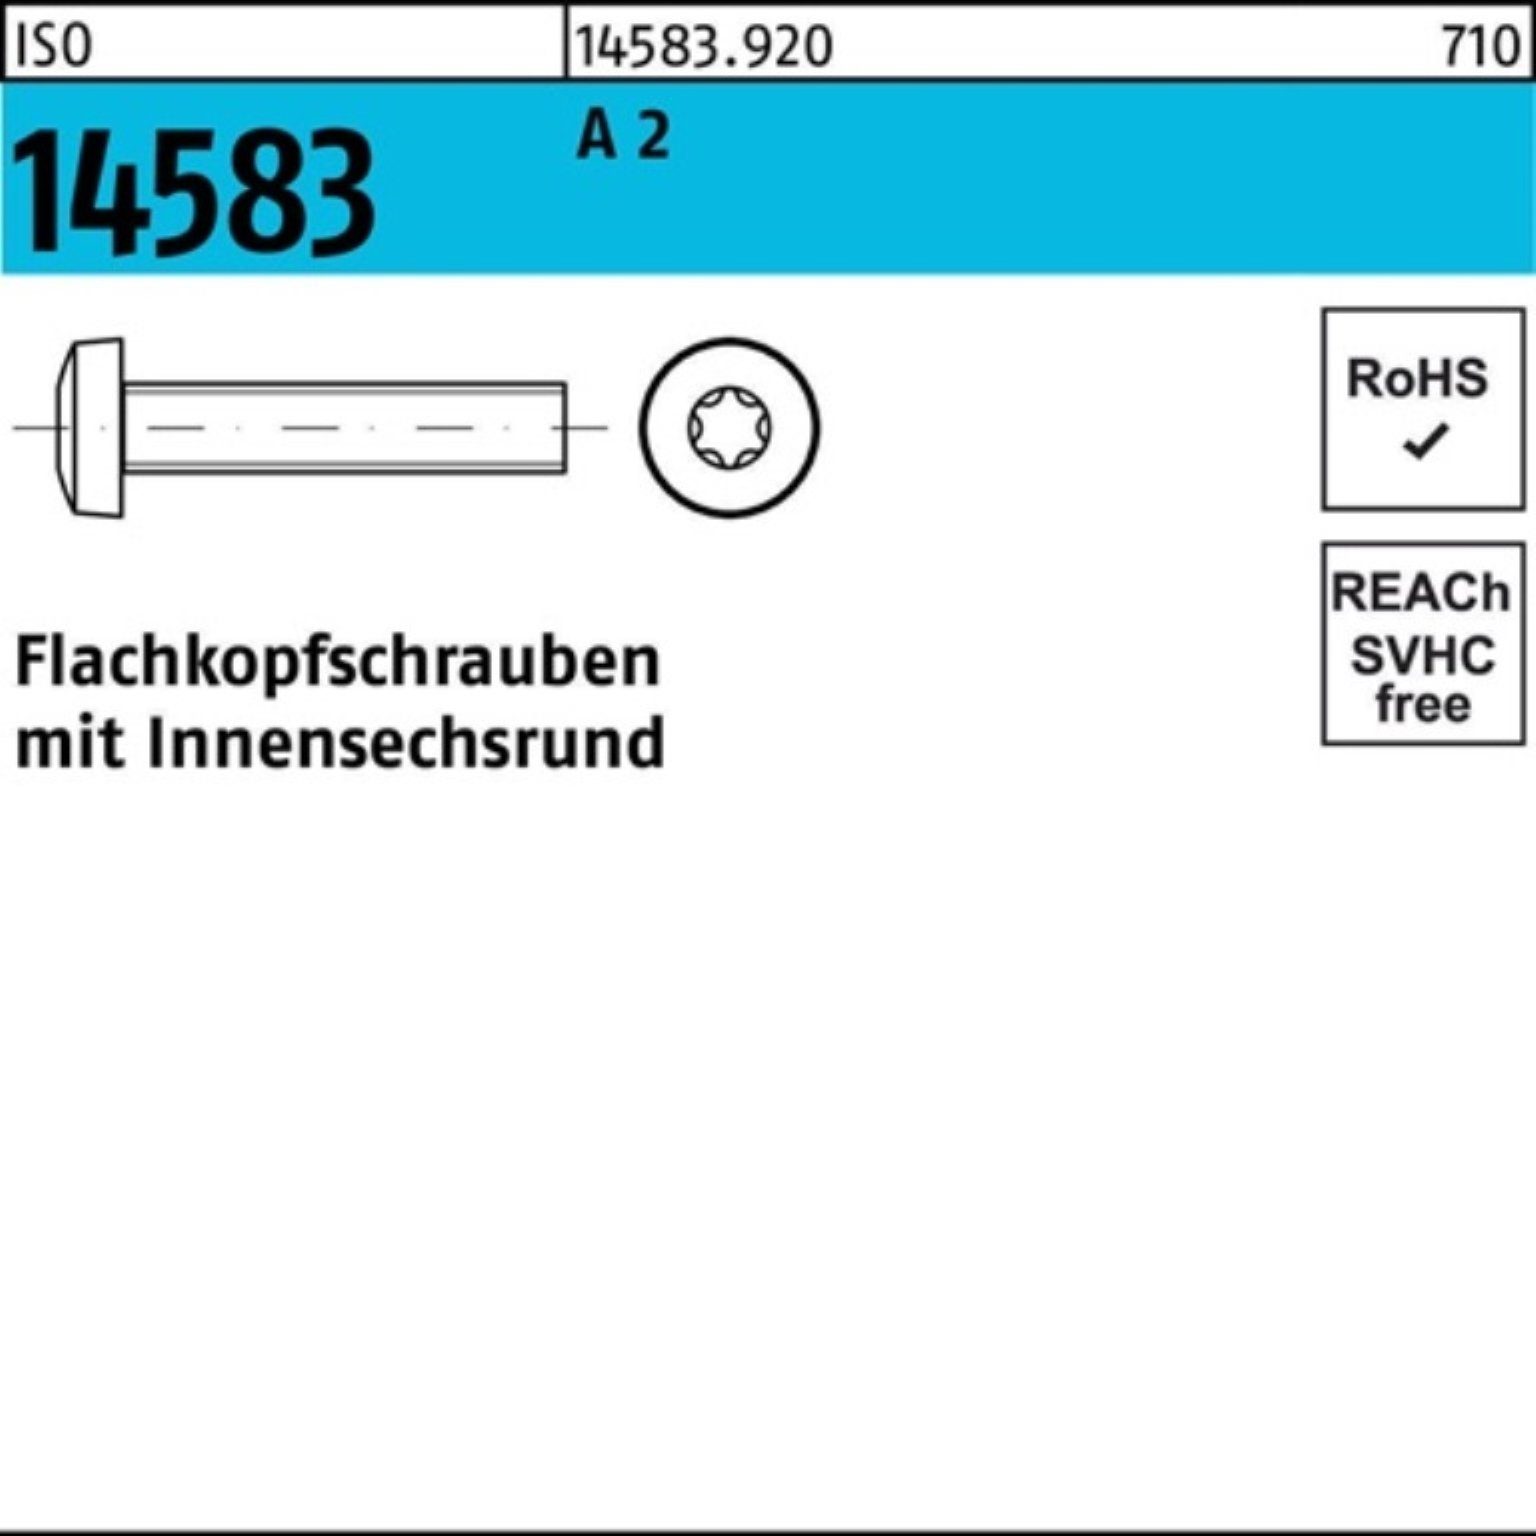 Reyher Schraube 14583 I M1,6x 1000er 2 ISO Stück 12 Pack ISR Flachkopfschraube 1000 A